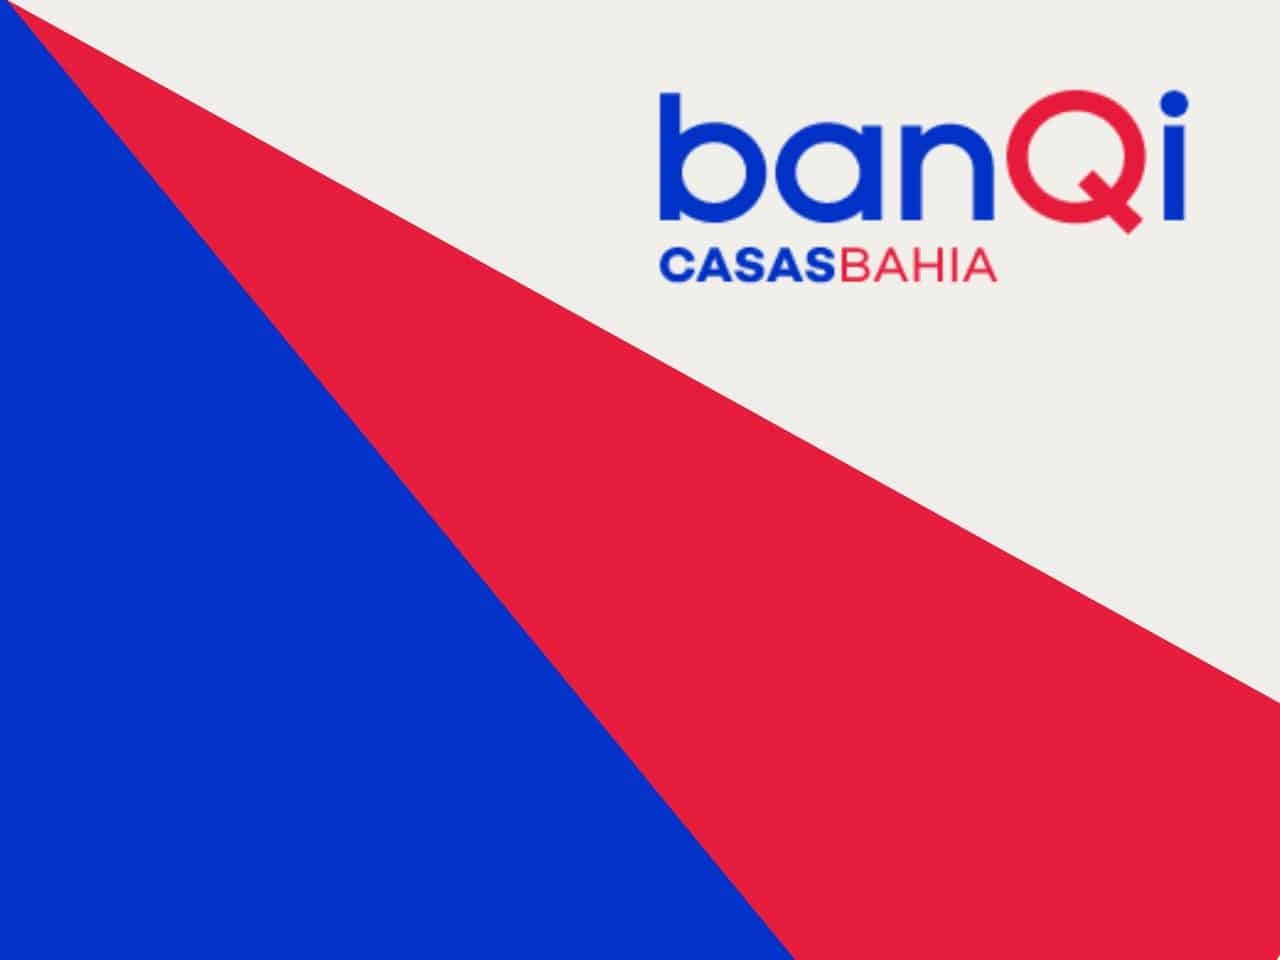 banQi, Conta digital da Via, promove parceria com rede dr.consulta